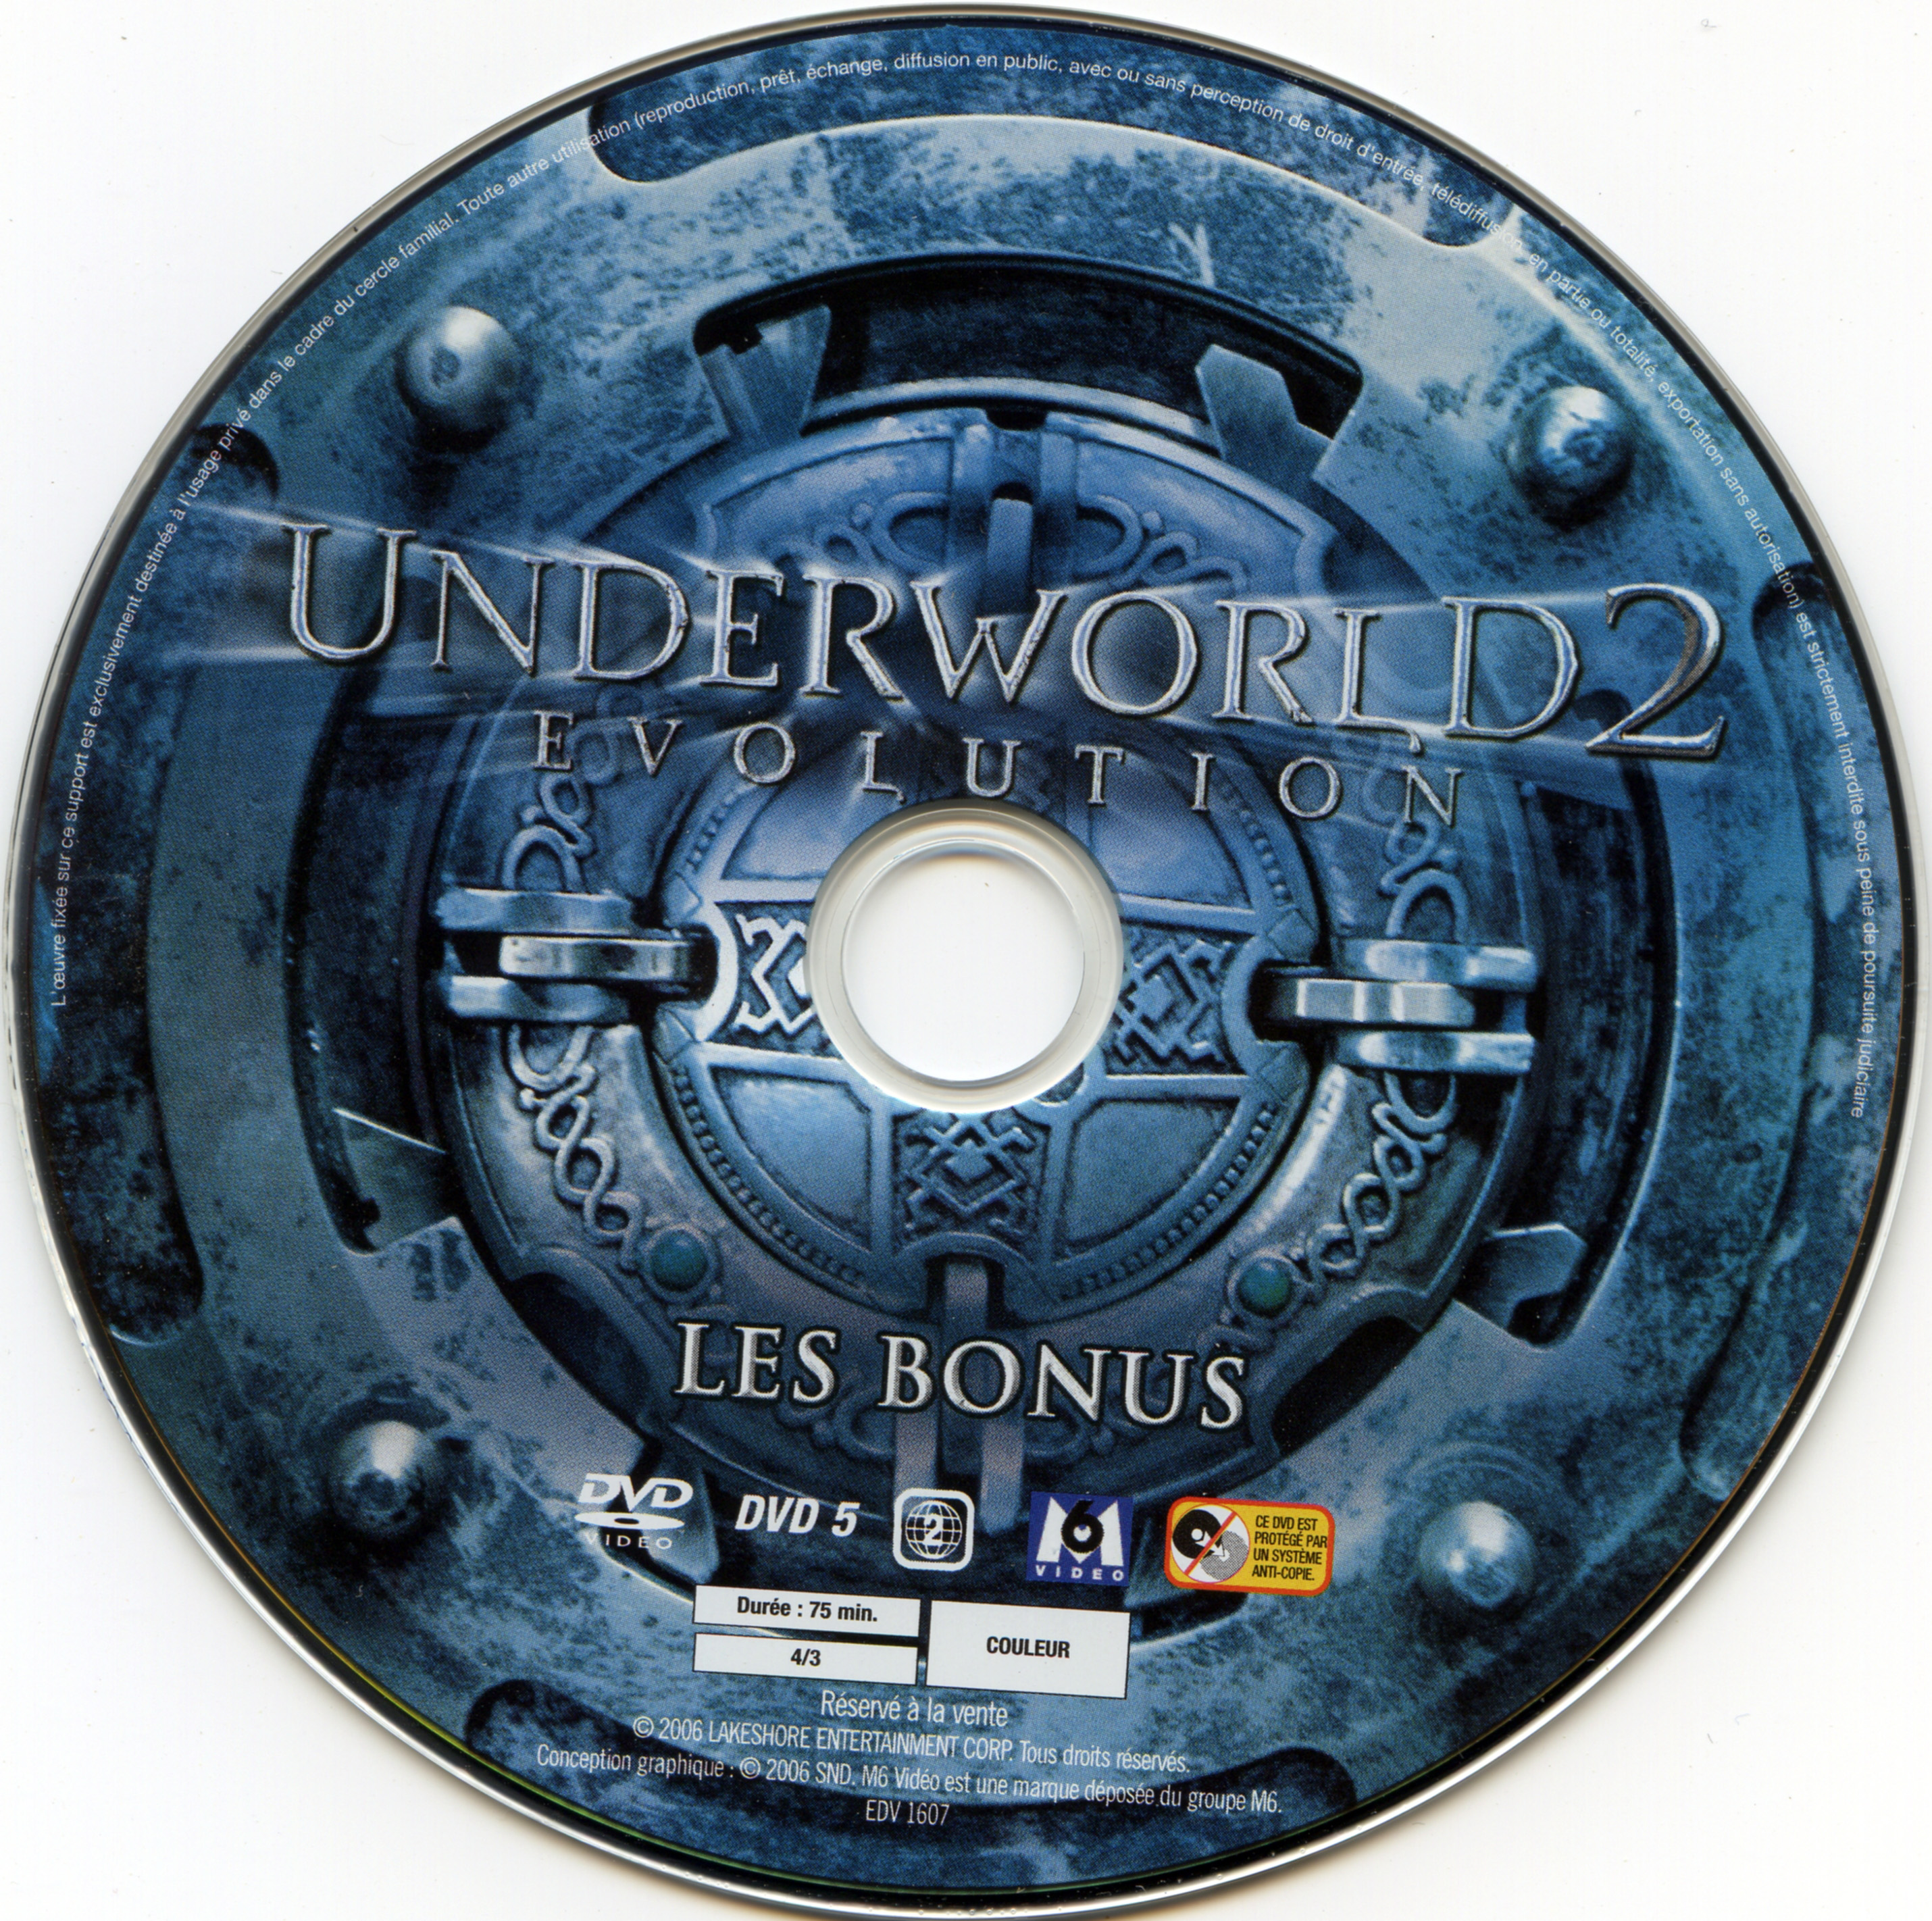 Underworld evolution DISC 2